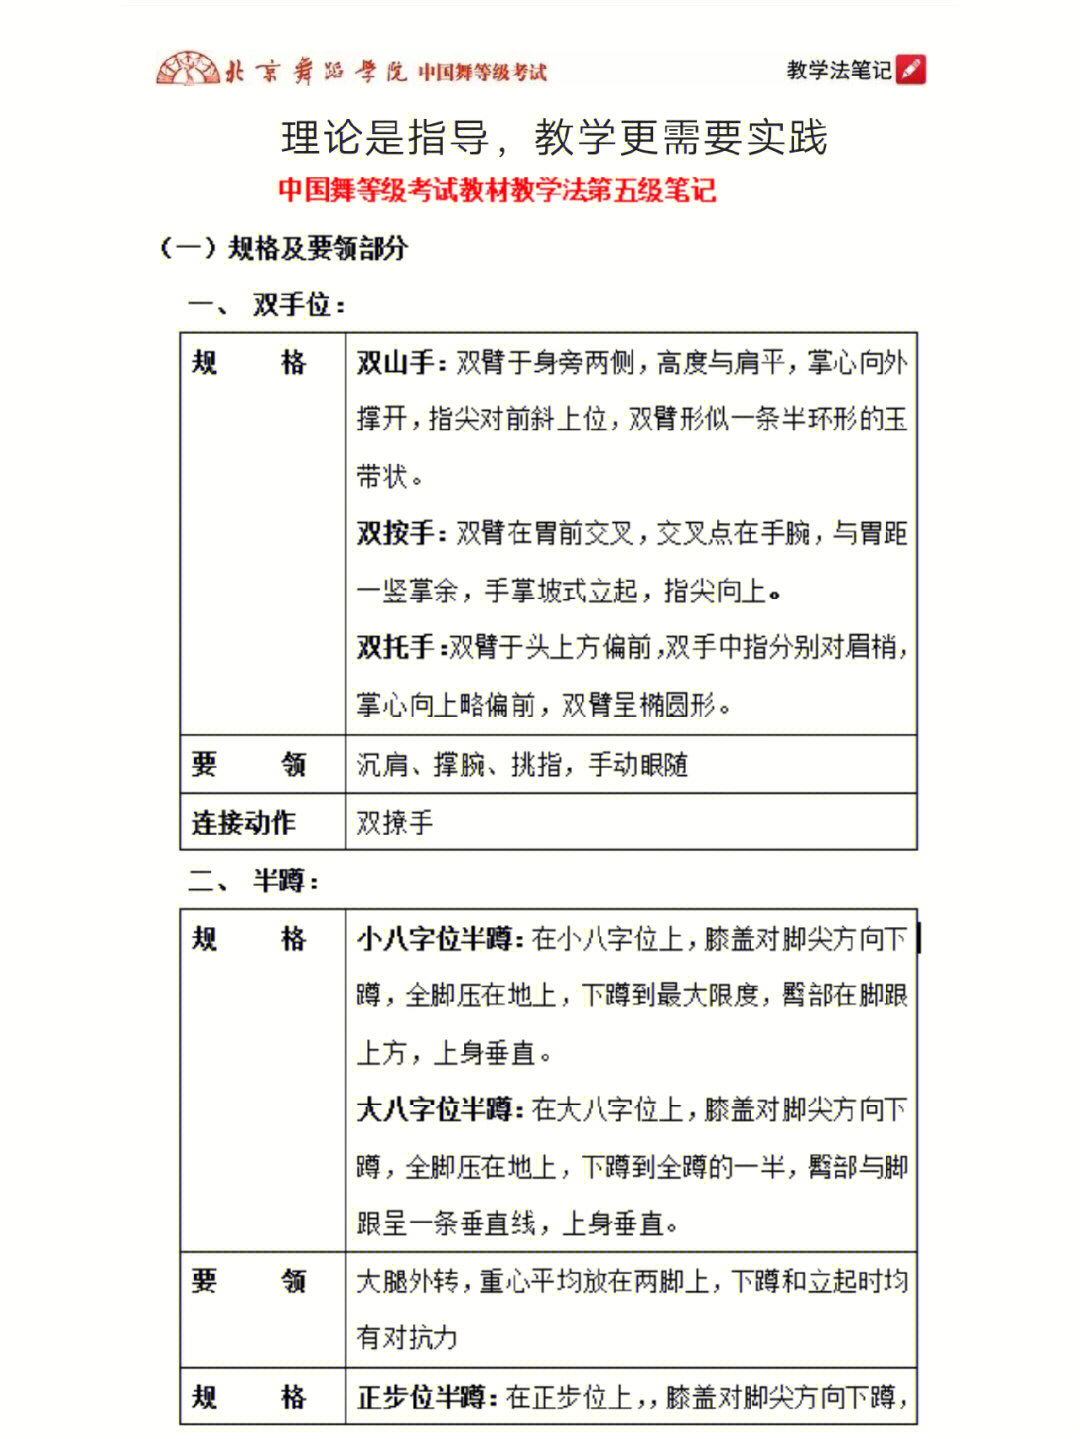 北京舞蹈学院中国舞等级考试教材教学法第五级笔记(一)规格及要领部分